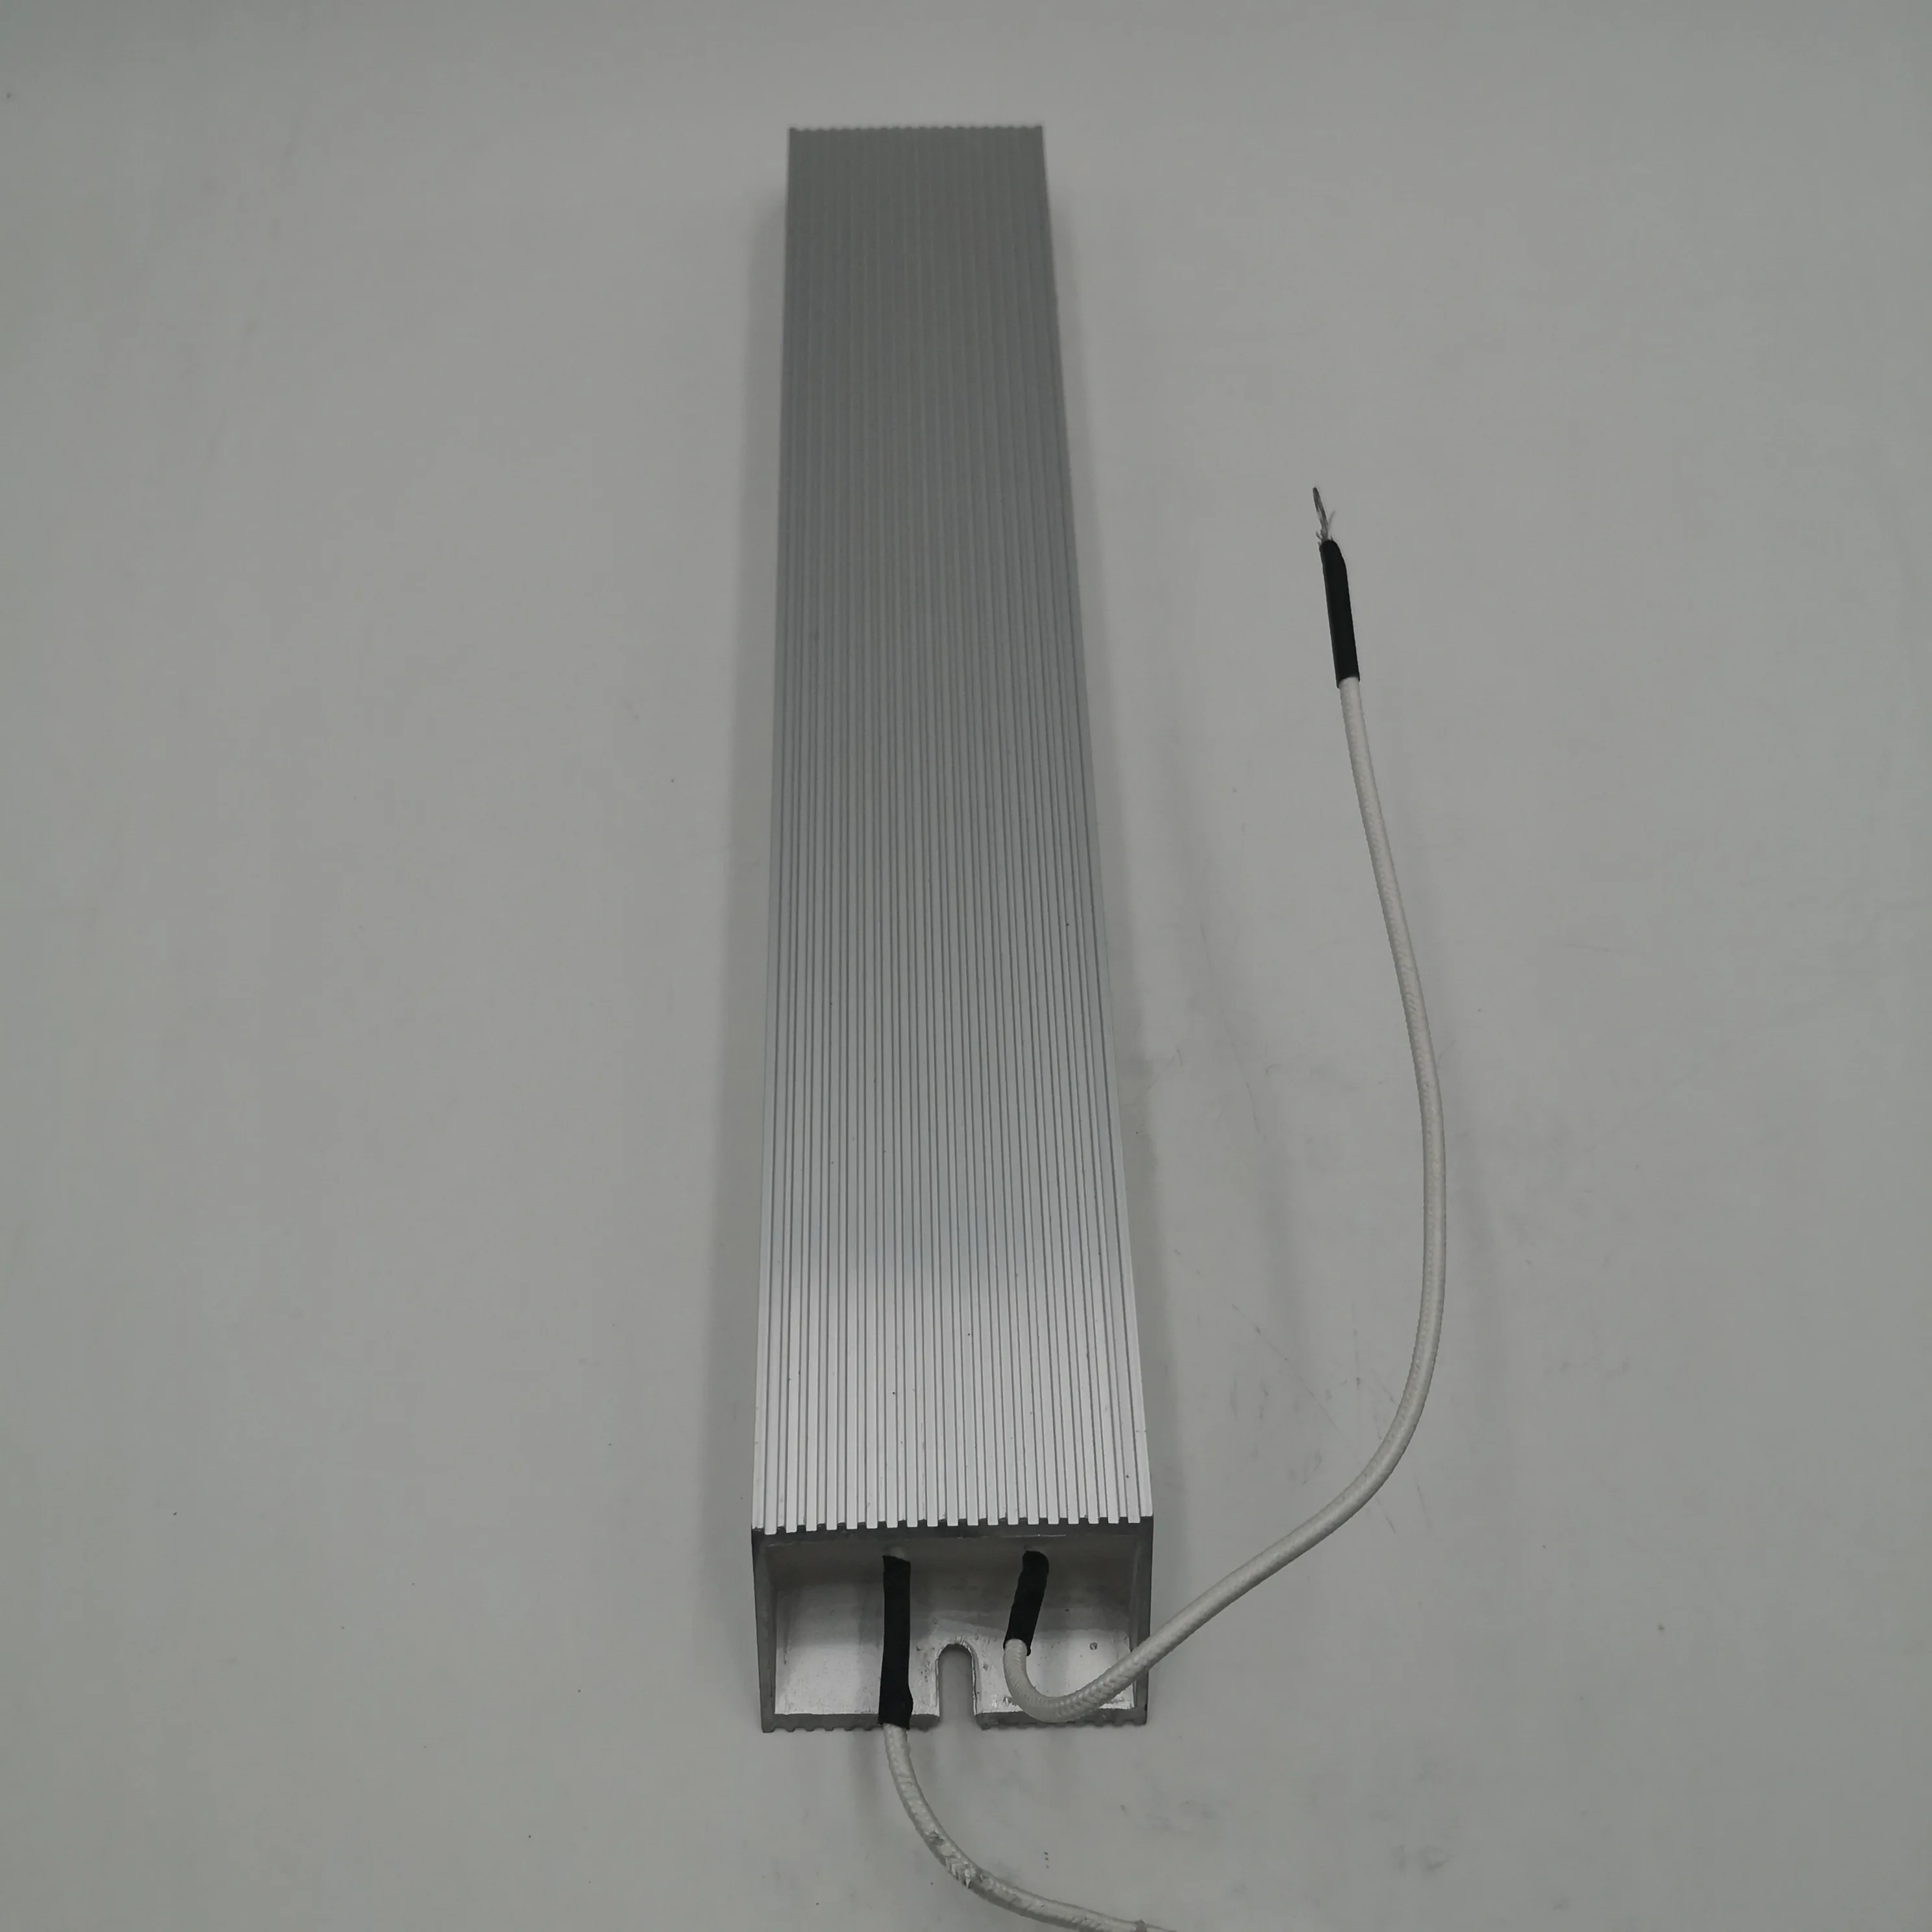 Тормозной резистор для частотного инвертора 4KW VFD 75 OMG 500 W